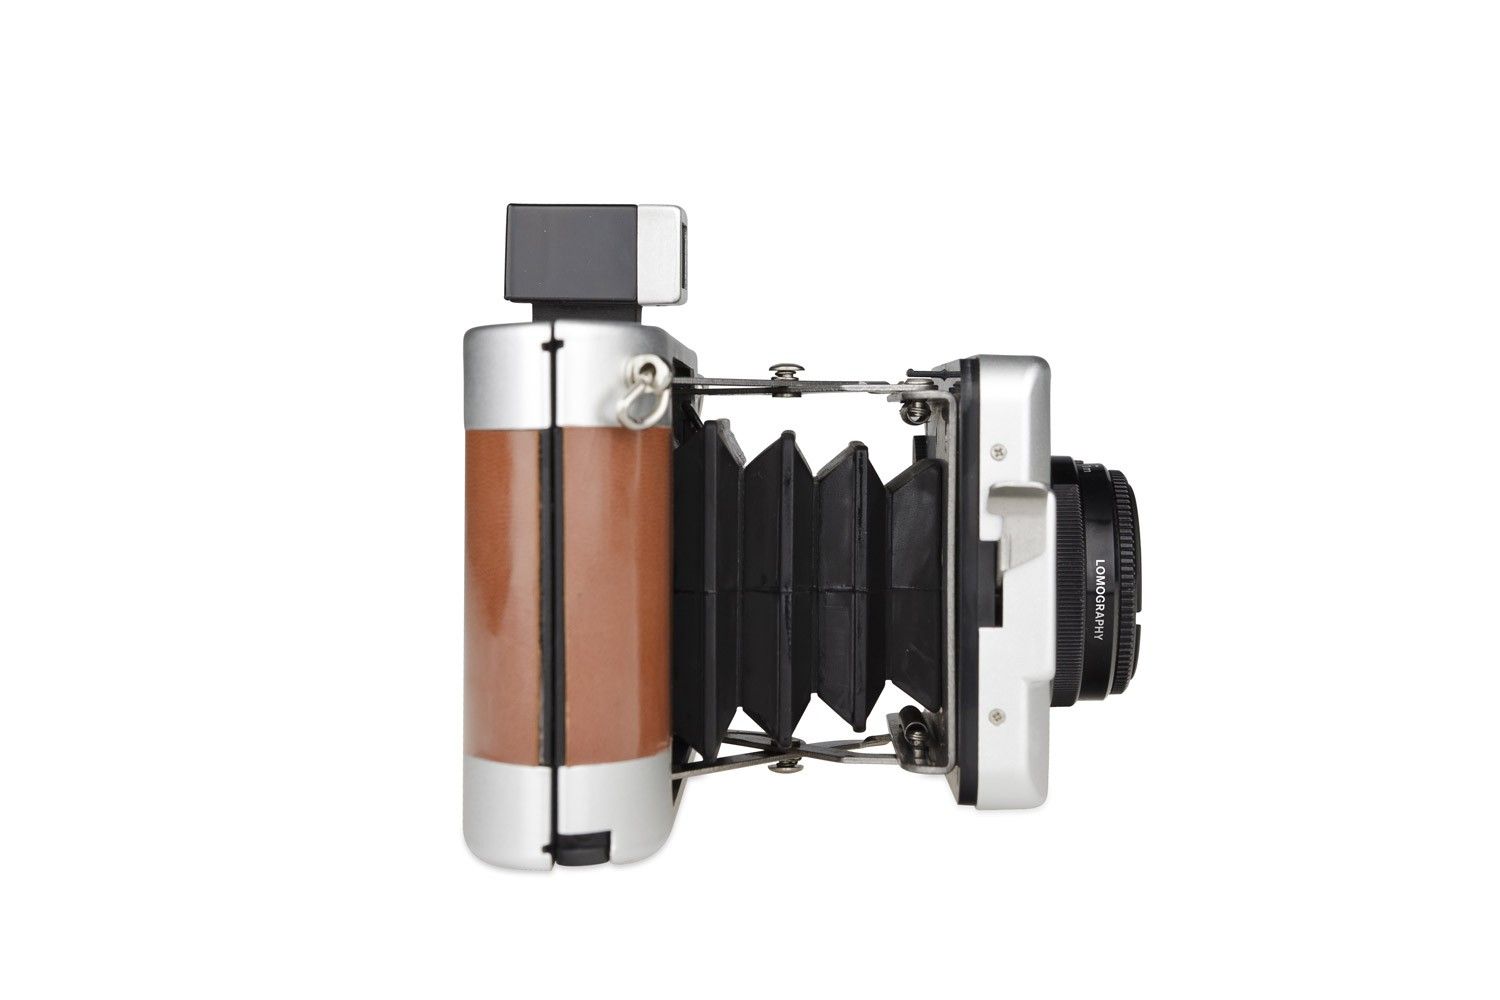 Lomography Belair X 6-12 Jetsetter Medium Format Camera Deluxe Kit